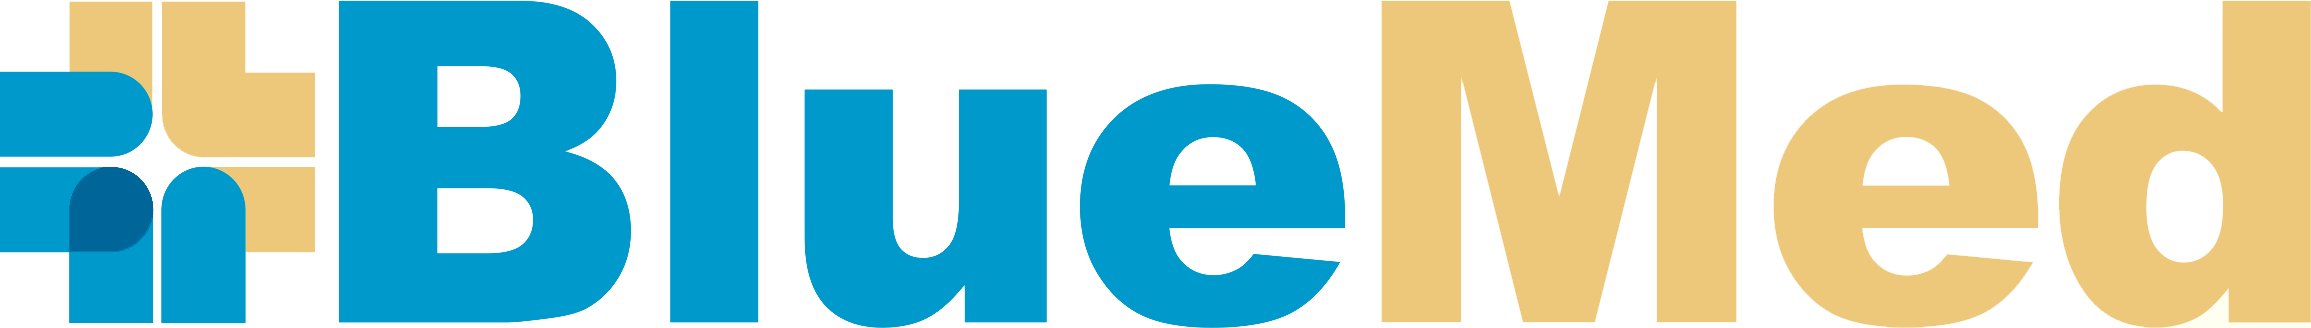 bluemedical.gr logo link to home